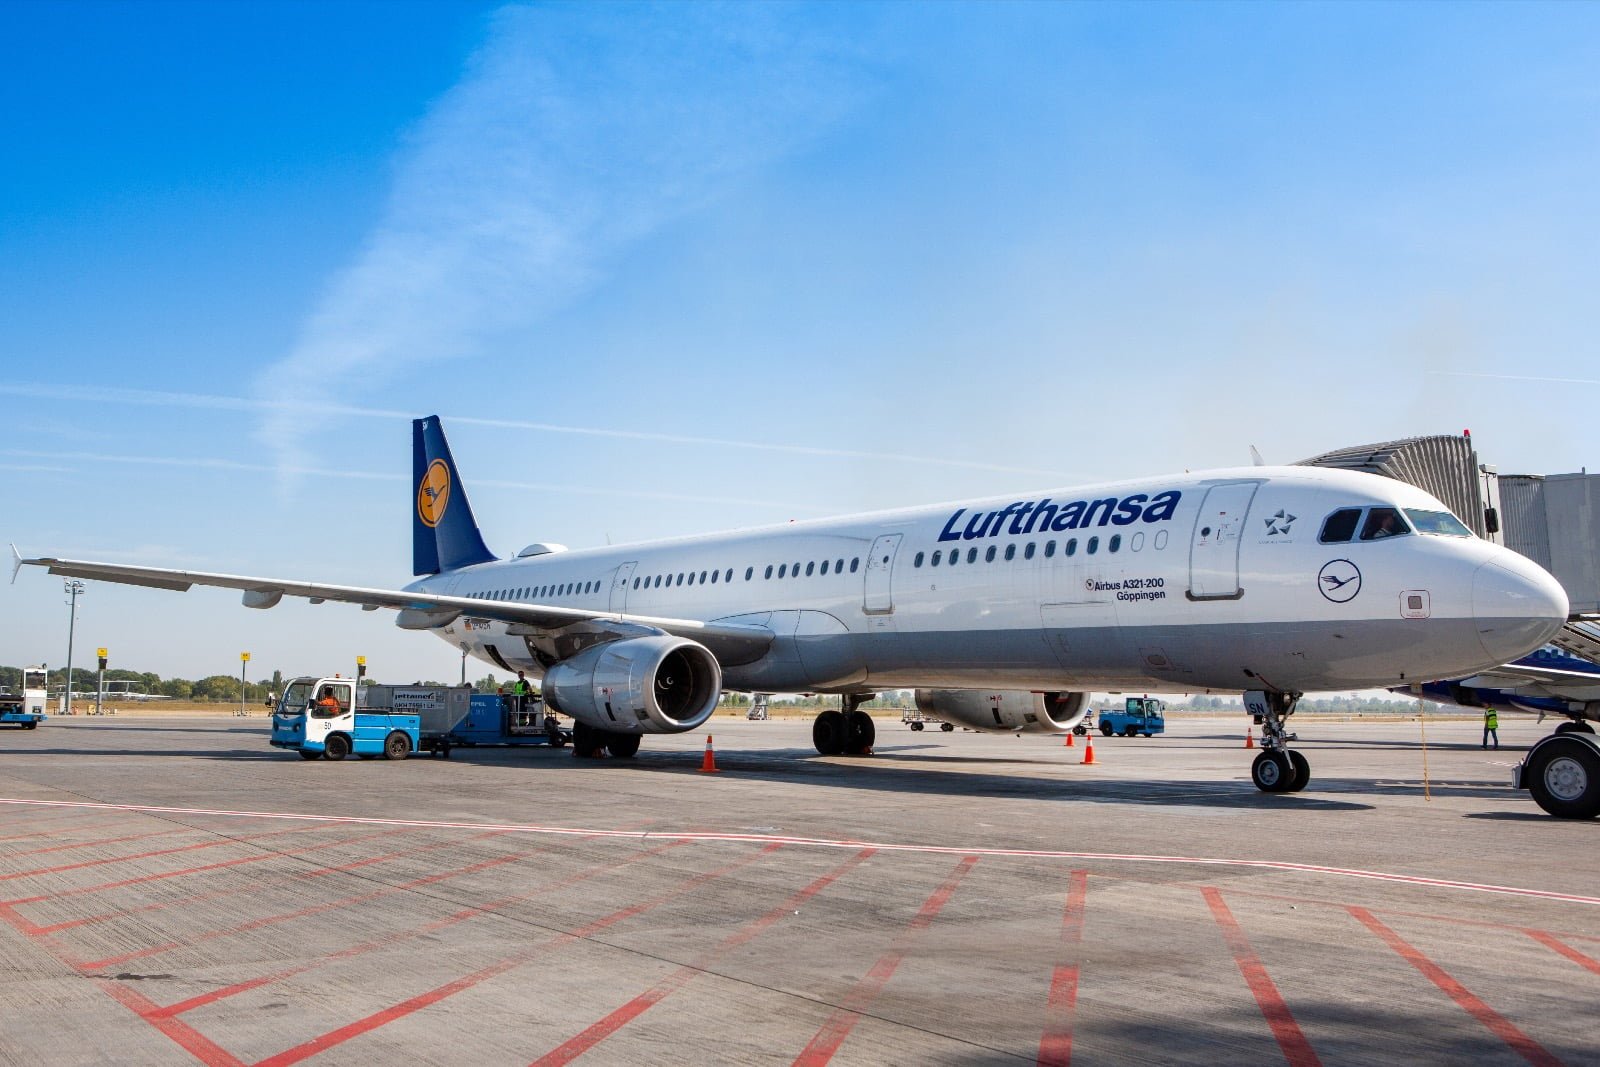 Lufthansa flights in Norway